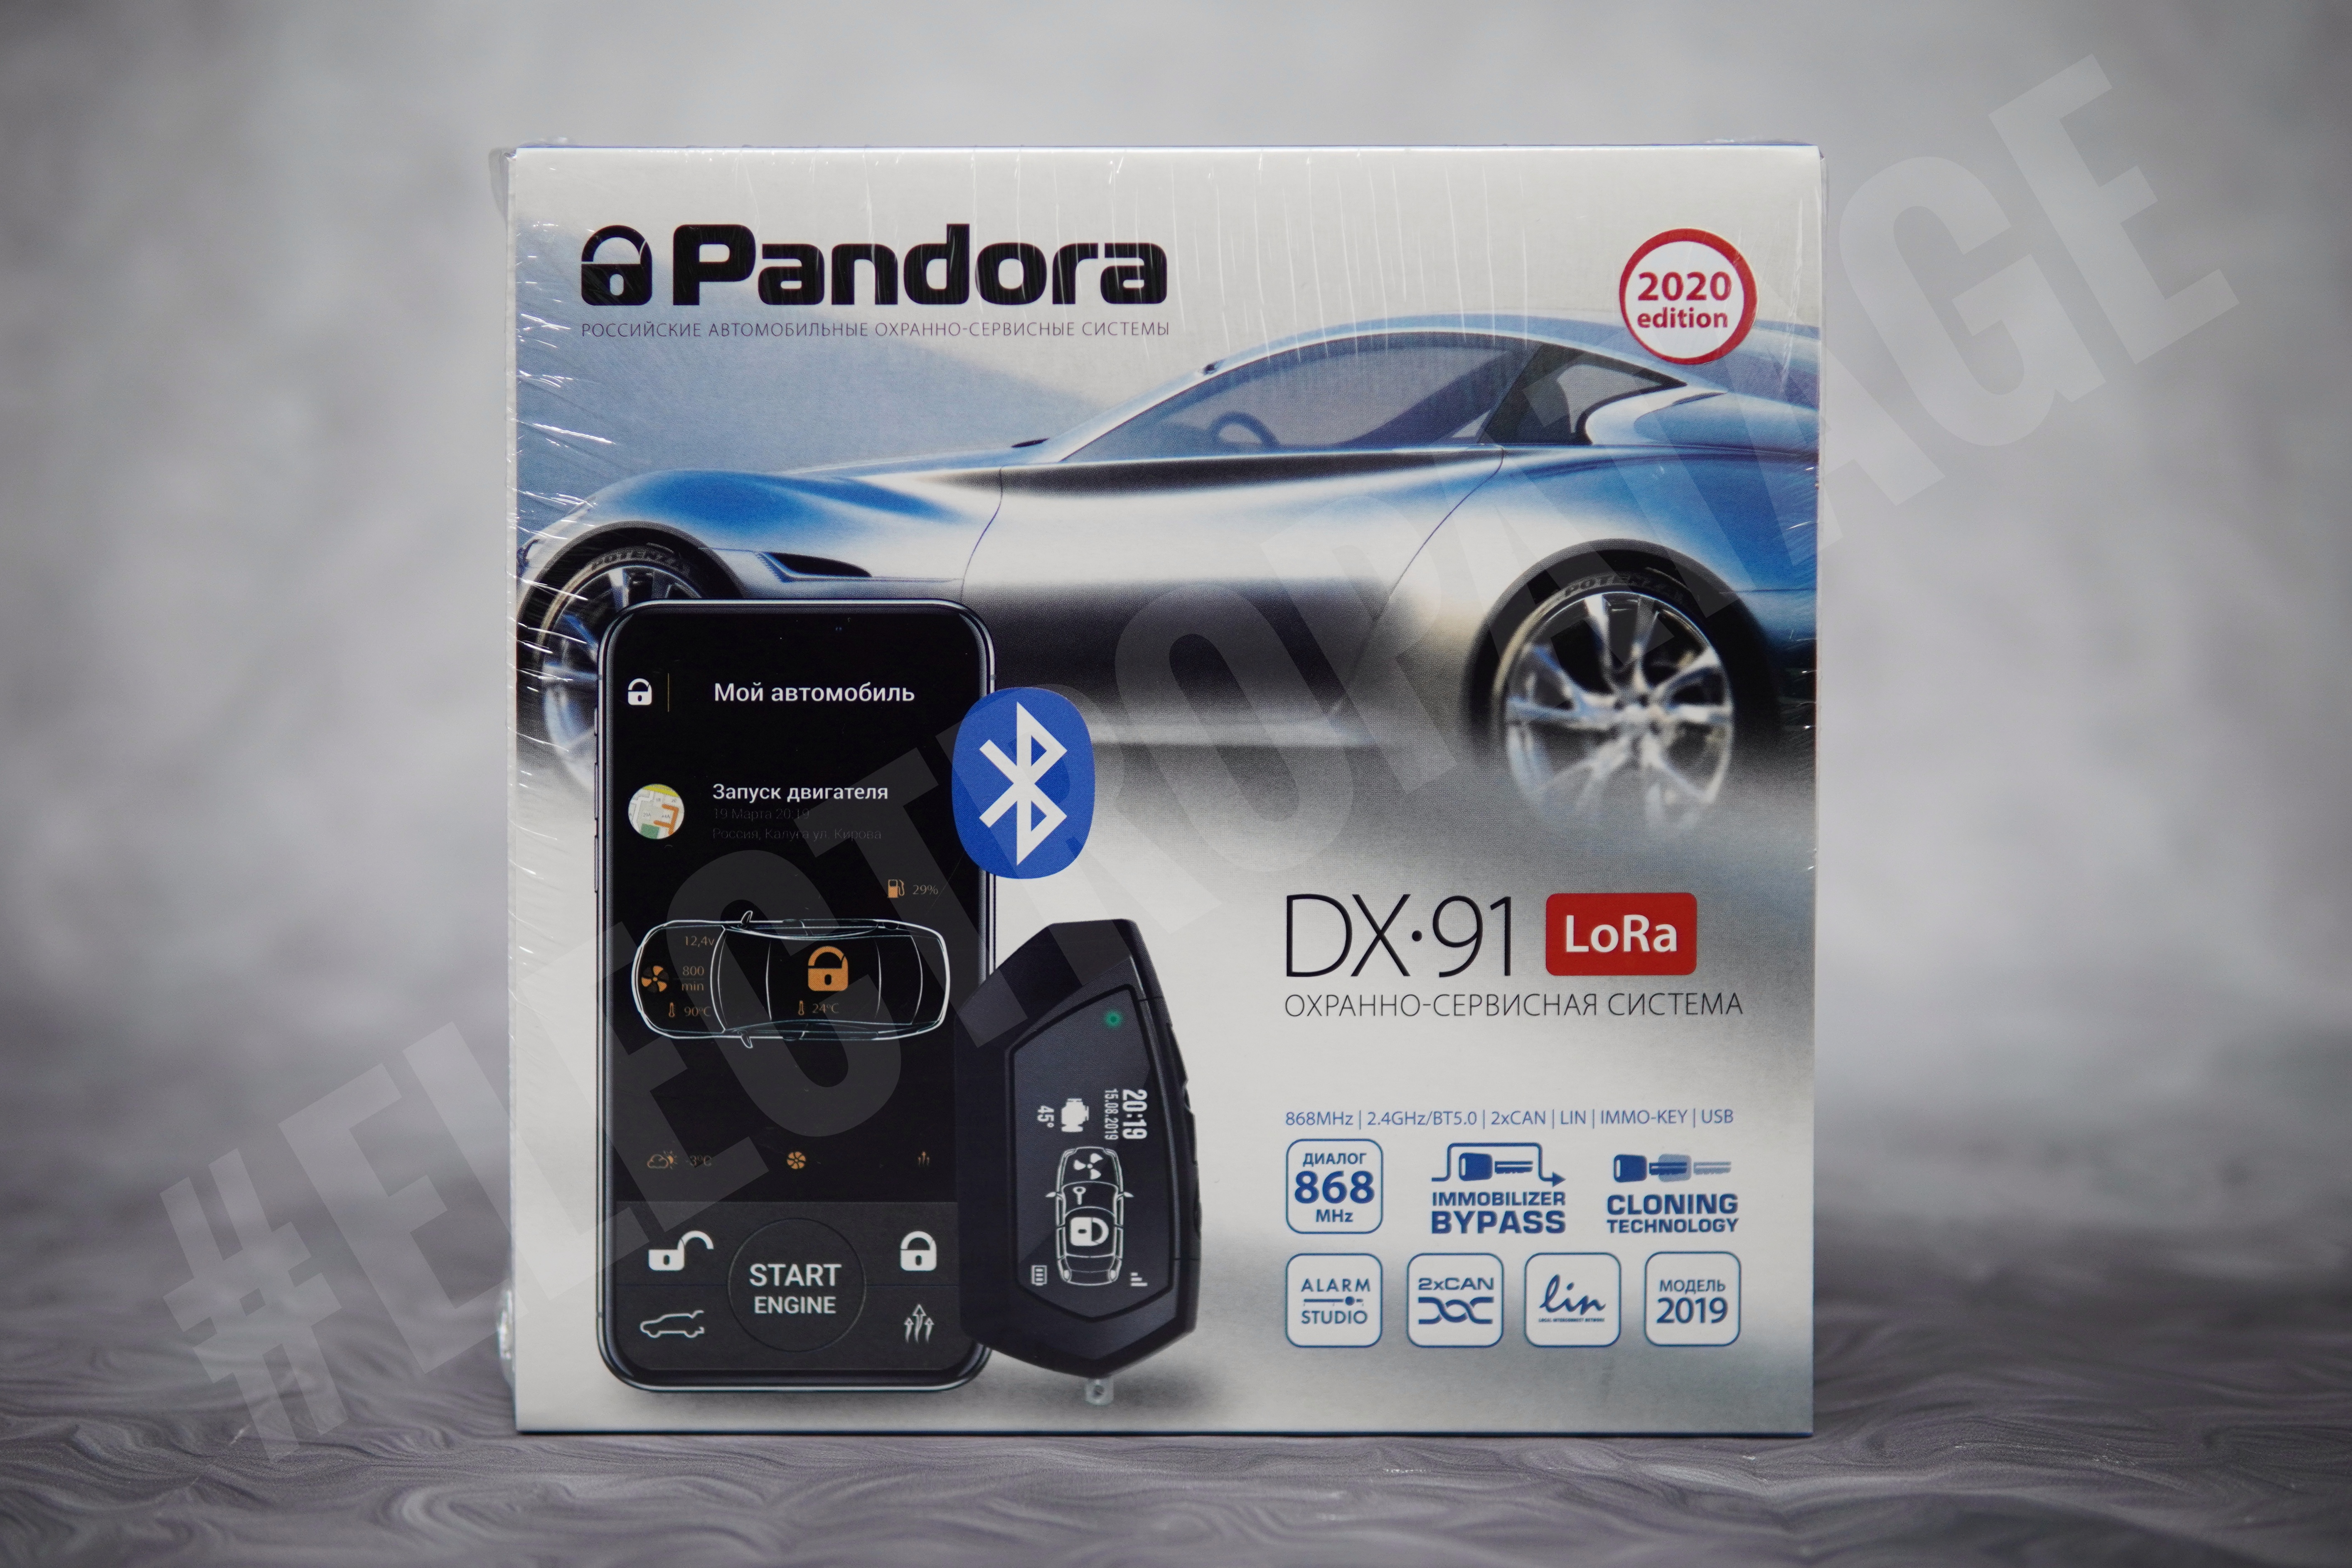 Pandora DX-91 Lora v3